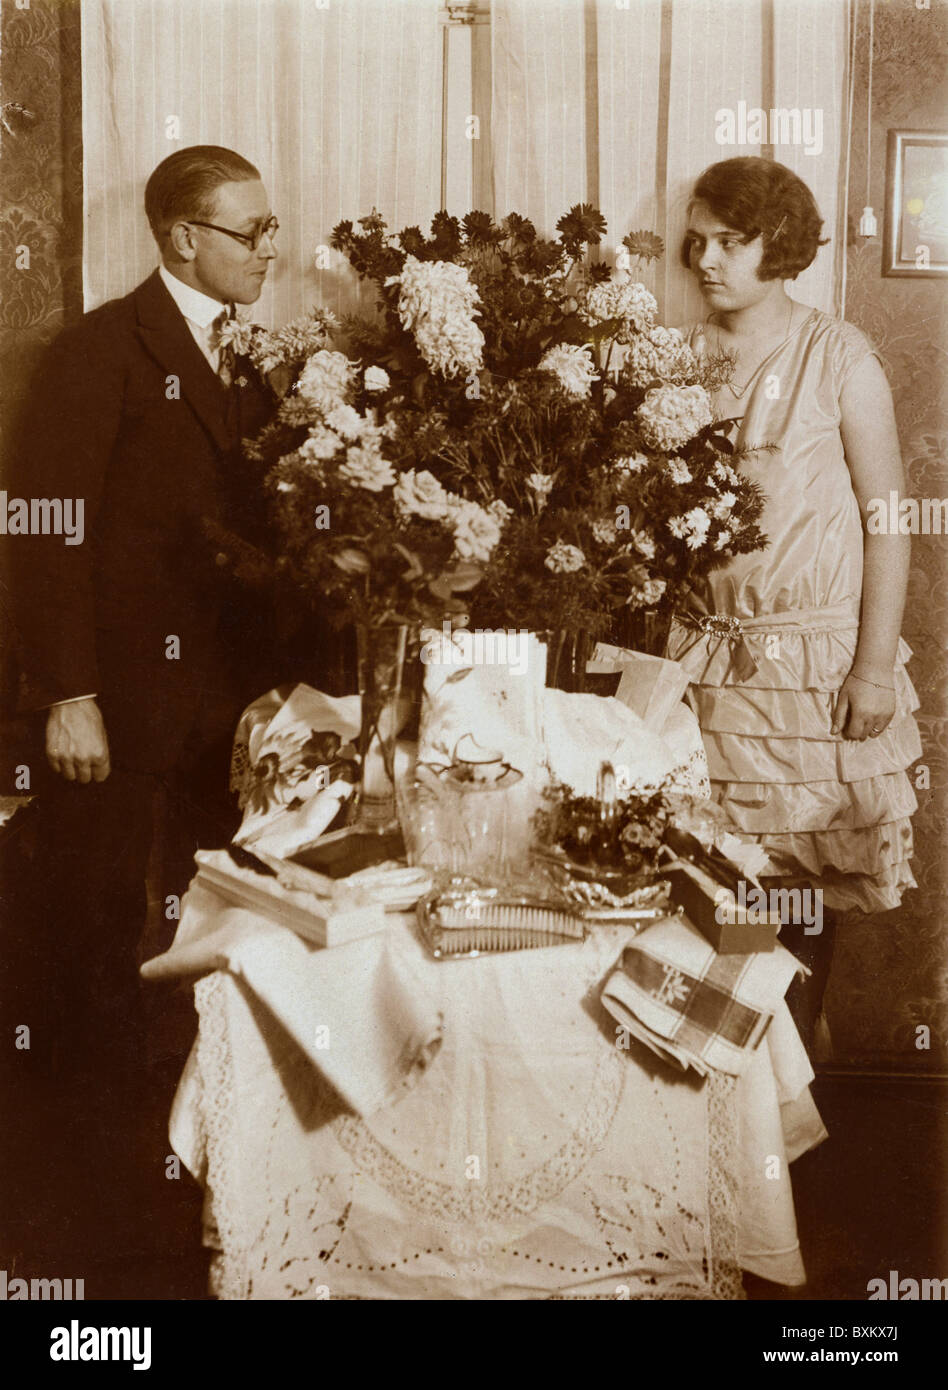 Personnes, mariage, couple de mariage avec cadeaux de mariage, table de présentation, Allemagne, vers 1925, droits supplémentaires-Clearences-non disponible Banque D'Images